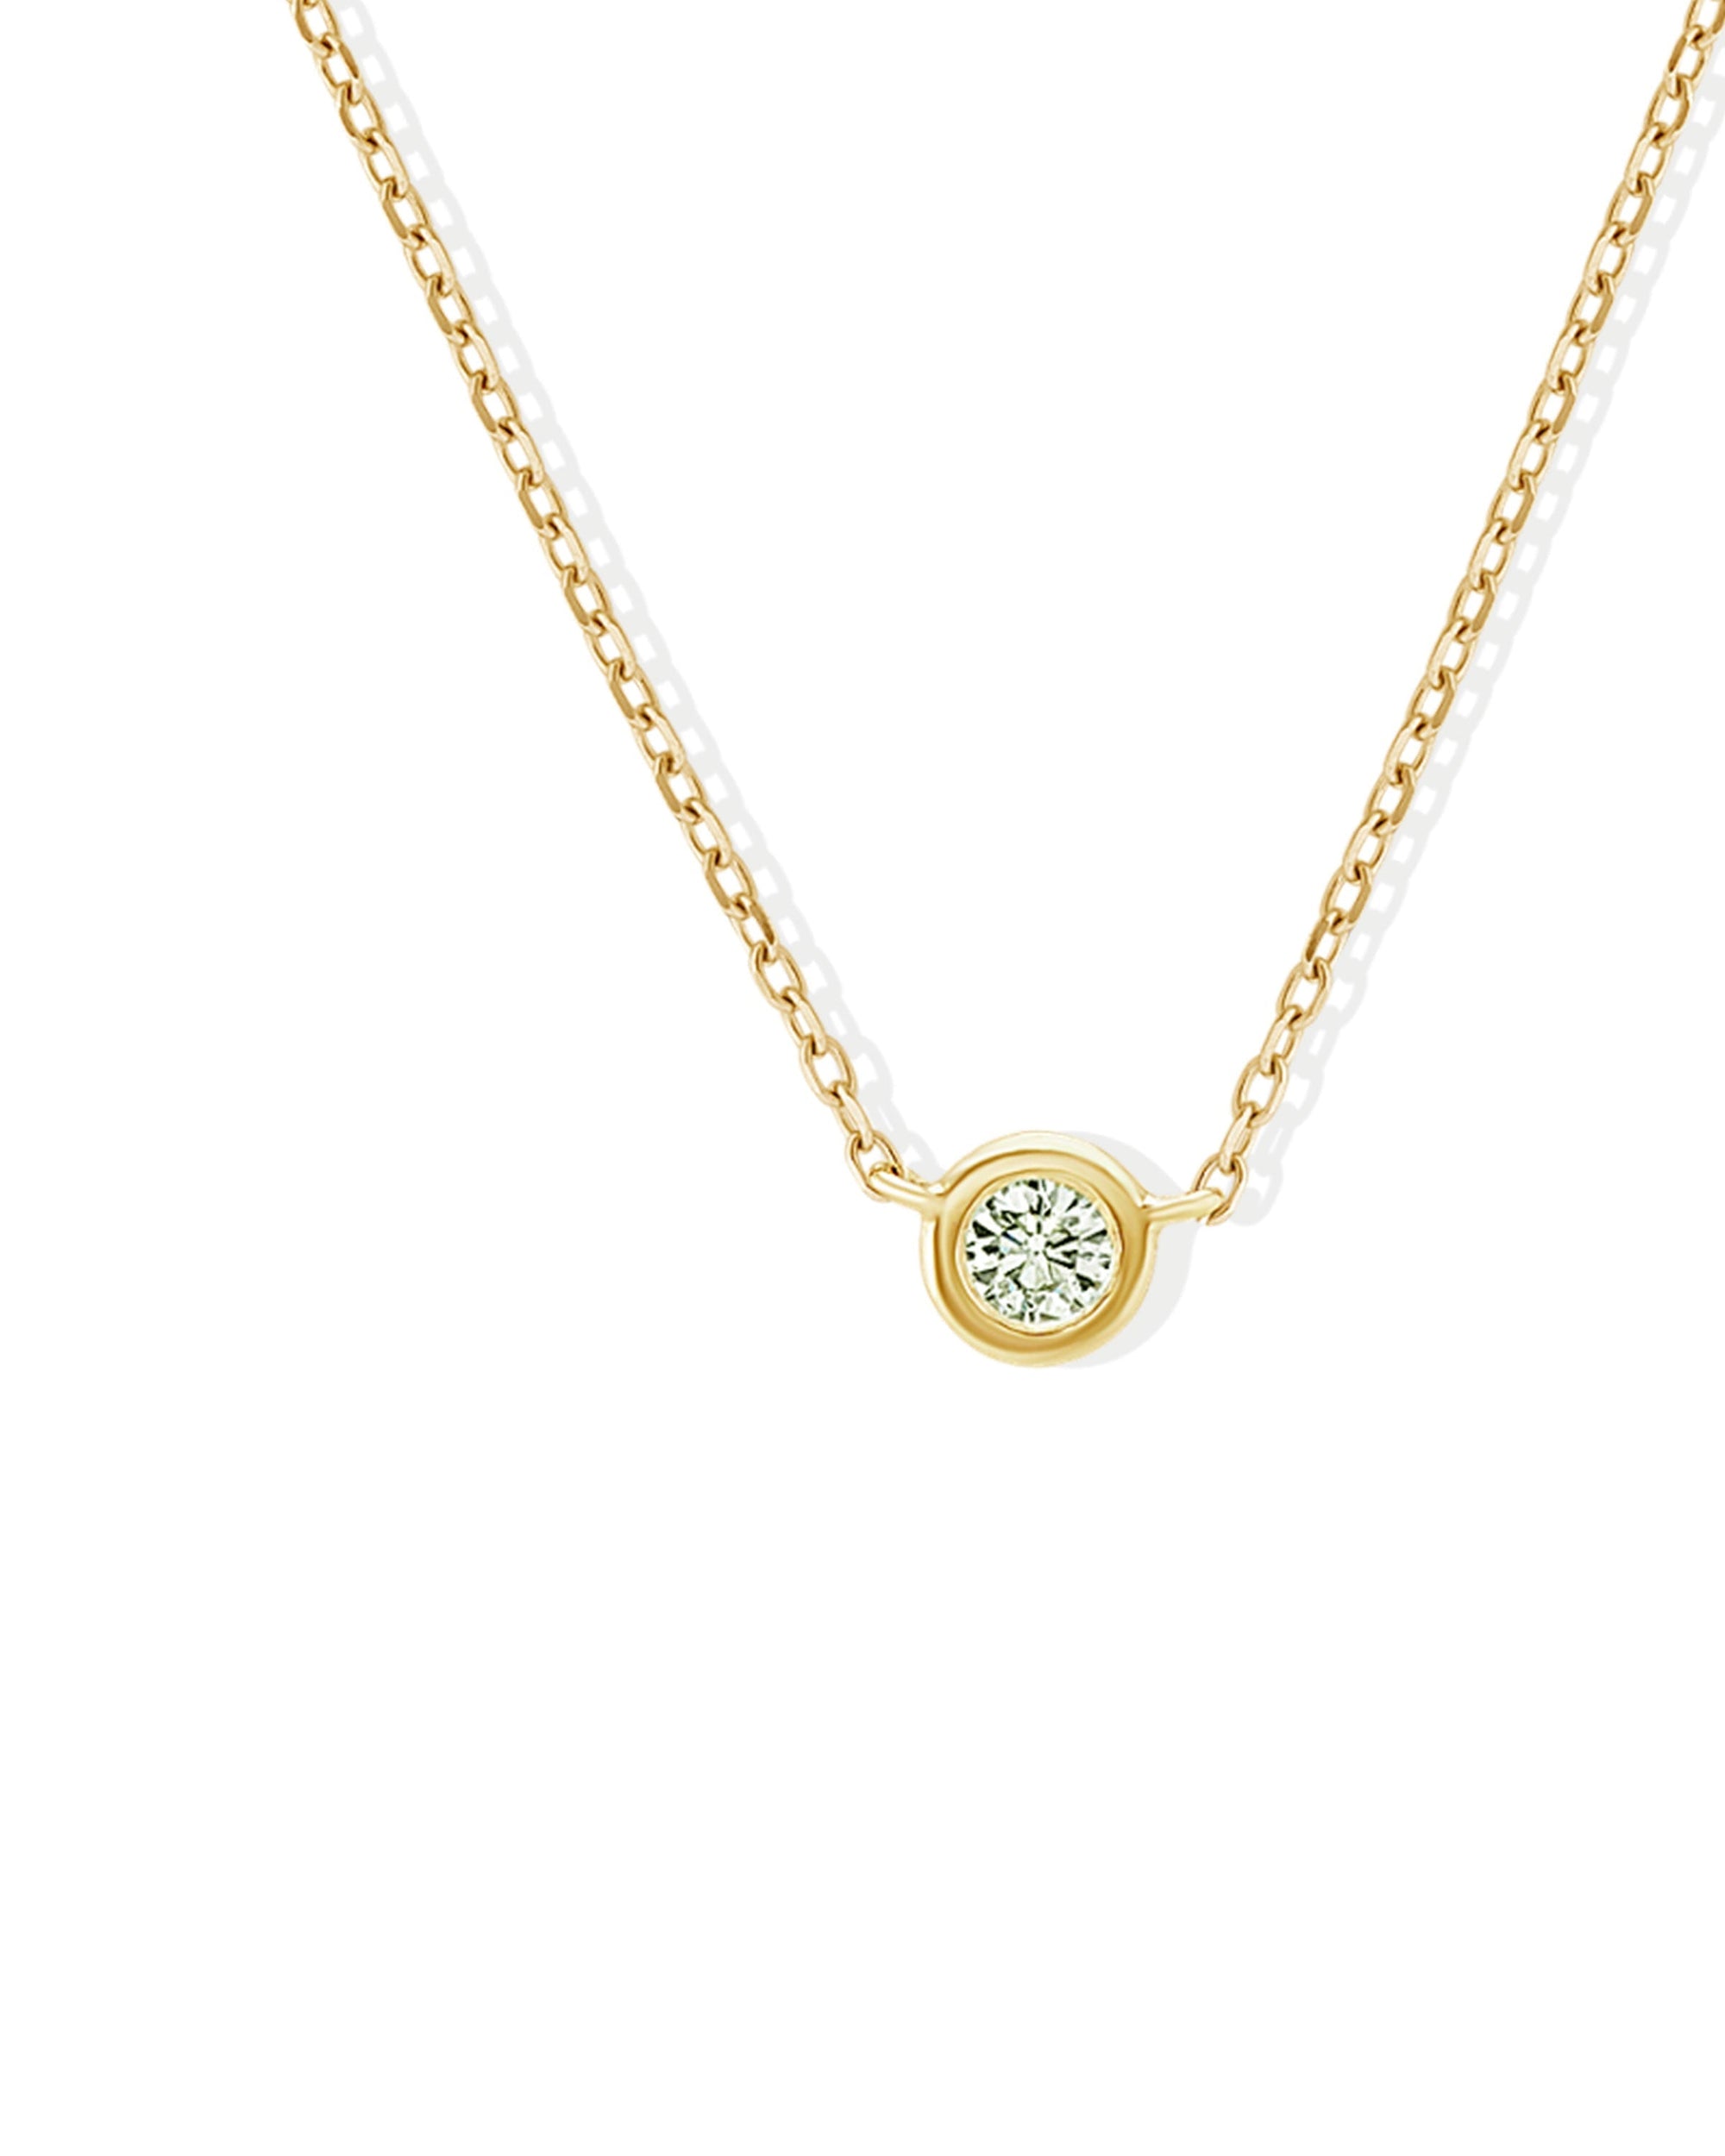 Soleil No. 4 Diamond Pendant Necklace